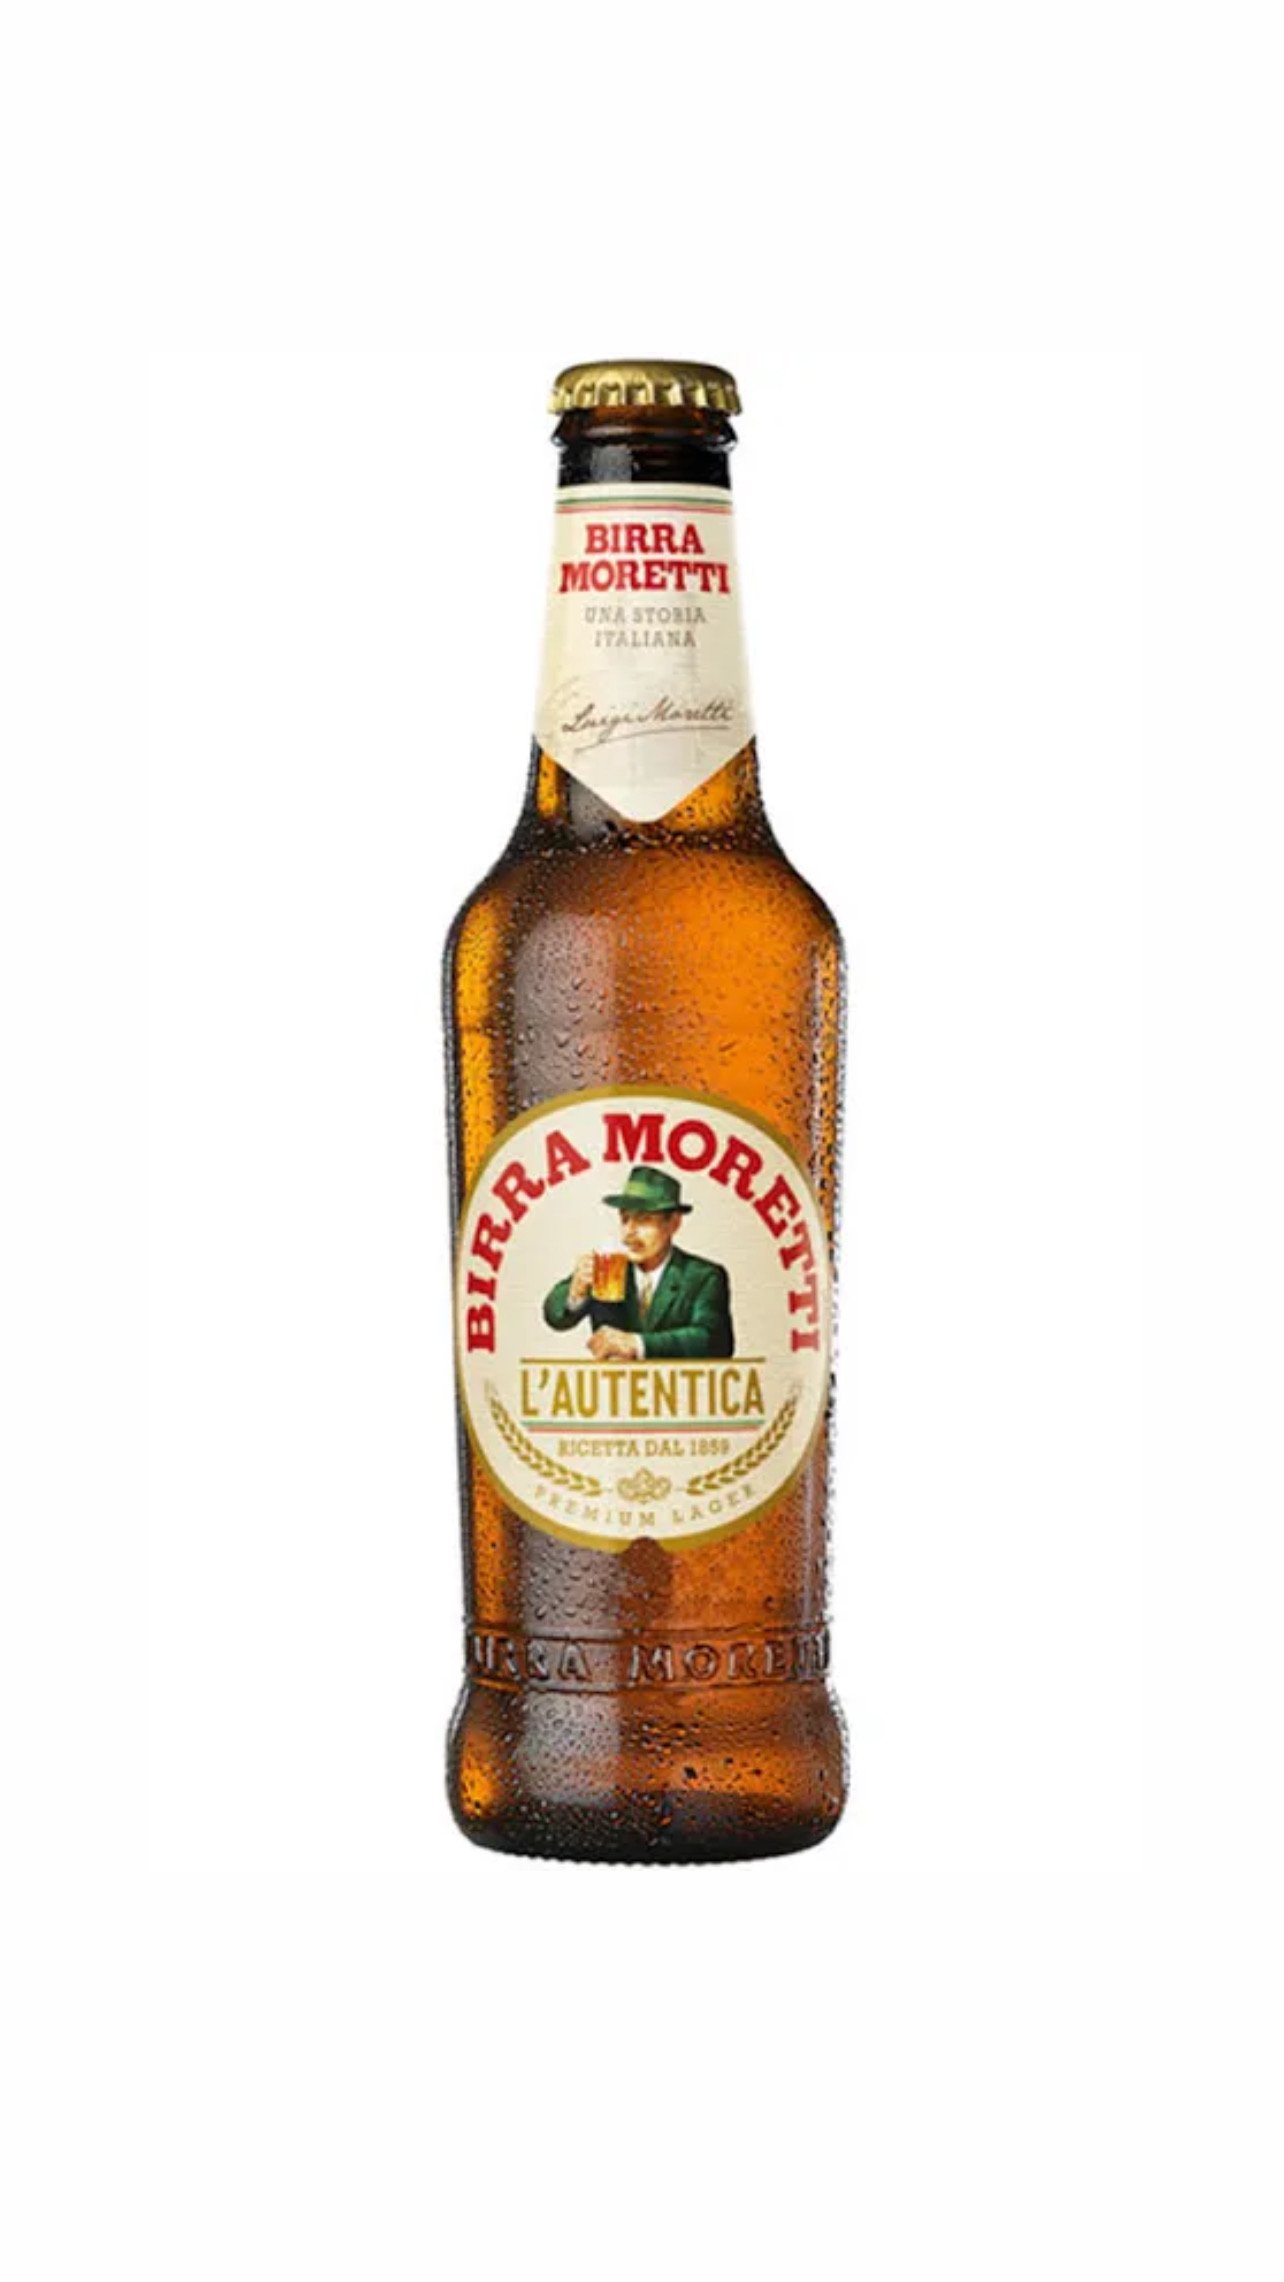 Birra Moretti 5% alc.